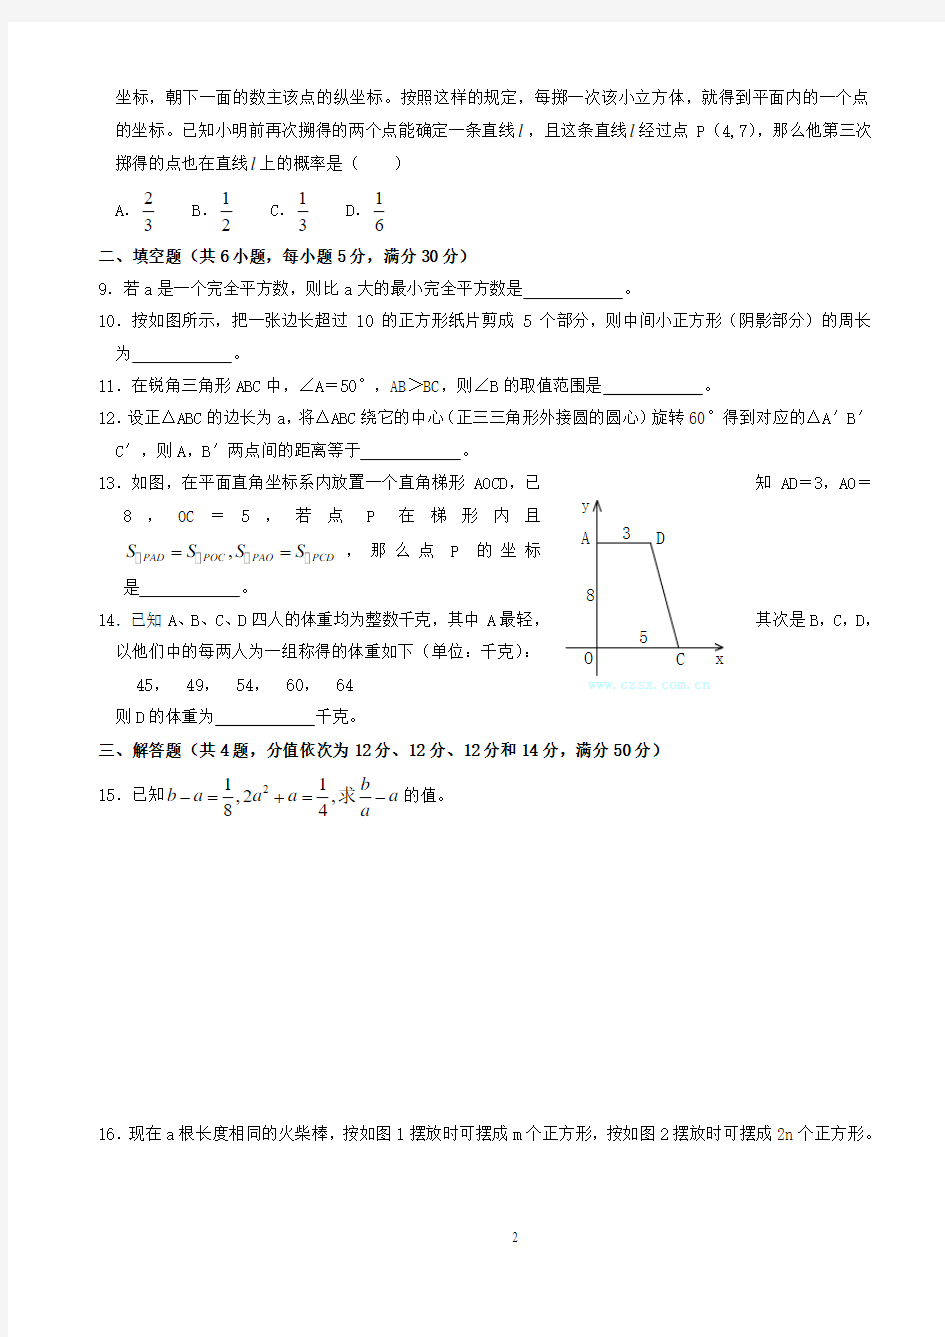 2016年浙江省初中数学竞赛初赛试题